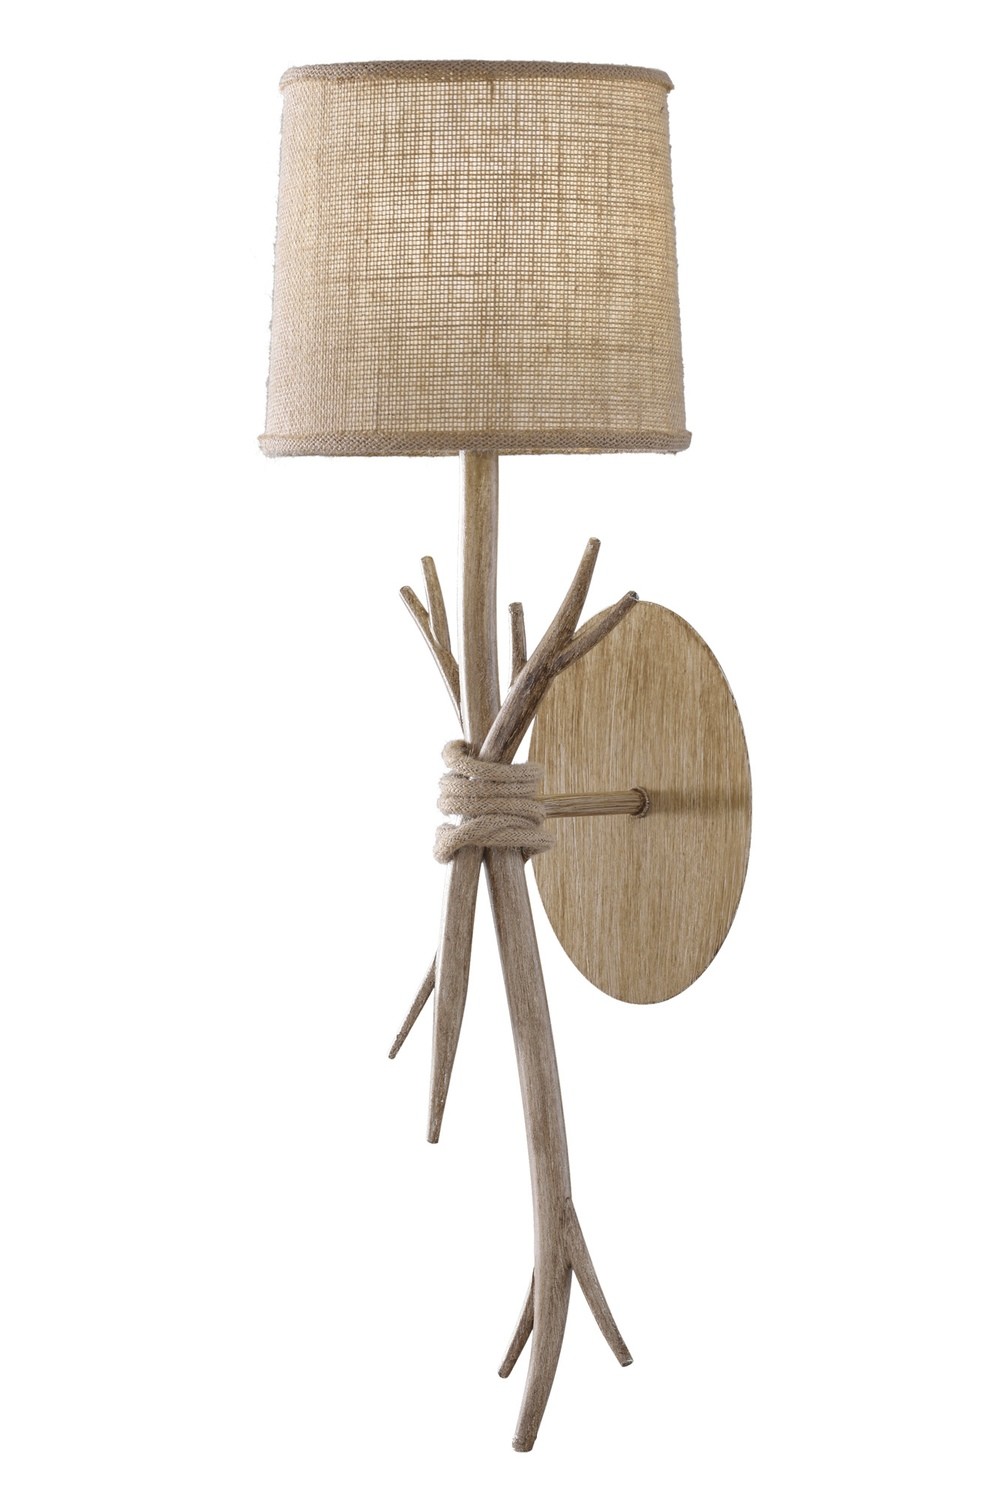 Sabina Wall Lamp, 1 x E27 (Max 40W), Imitation Wood, Linen Shade,